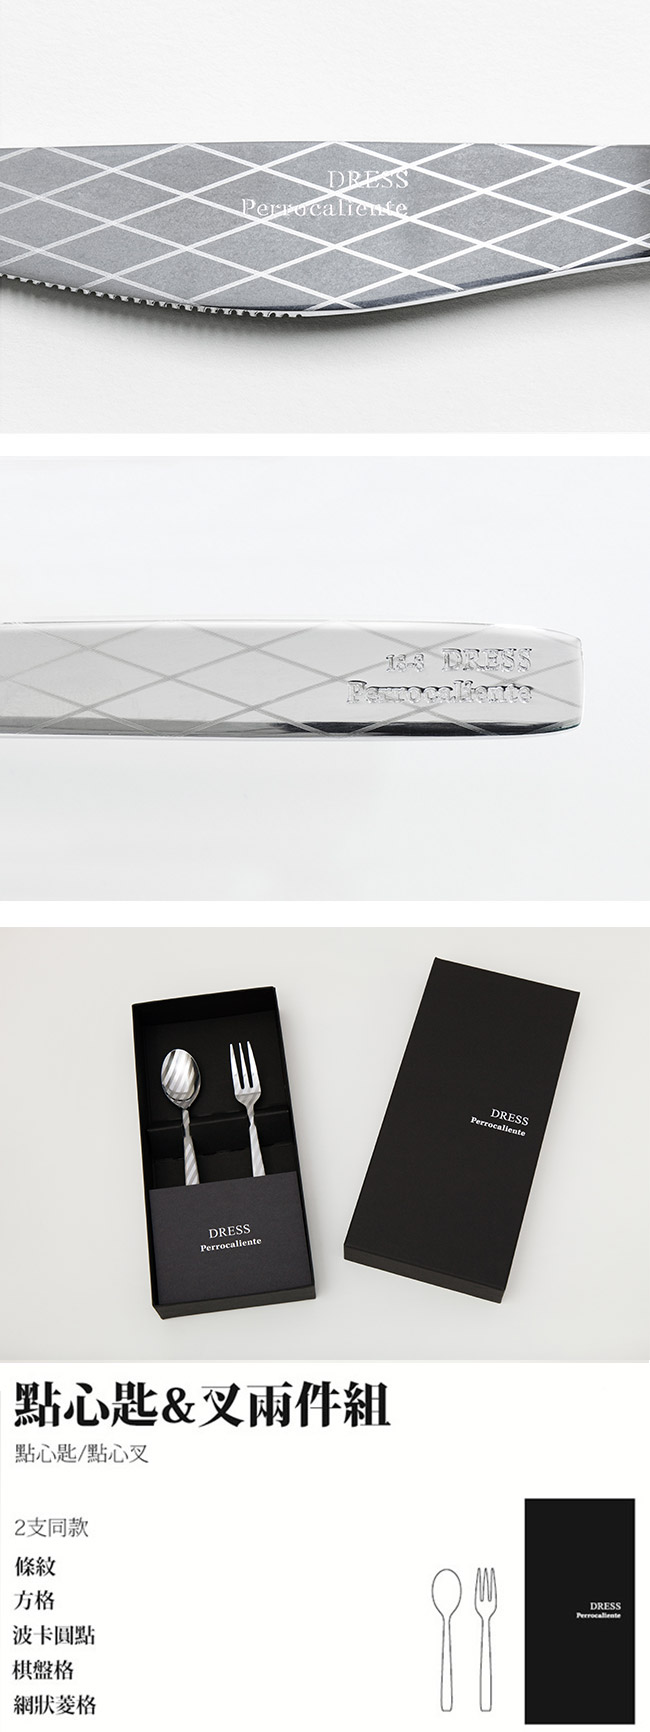 【4/23~4/29精選品牌9折優惠】日本 Perrocaliente Dress Gift Set 銀色盒裝餐具組 點心匙＆叉兩件組 網狀菱格